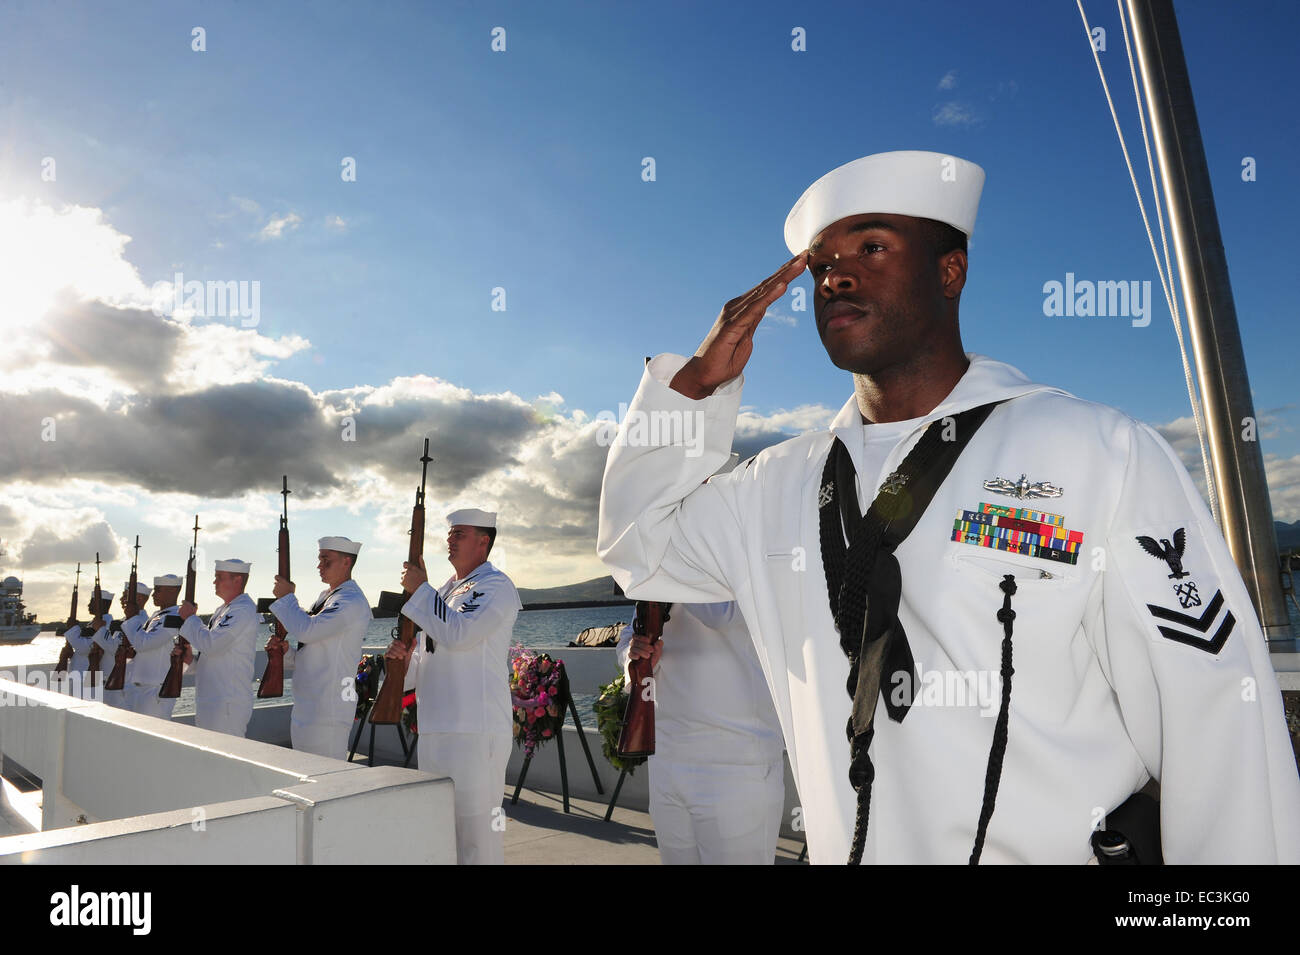 US Navy marineros salute durante una ceremonia de dispersión de cenizas en el 73º aniversario en el memorial de Pearl Harbor el 7 de diciembre de 2014 en Pearl Harbor, Hawai. Pearl Harbor fue atacado por las fuerzas japonesas el 7 de diciembre de 1941. Foto de stock